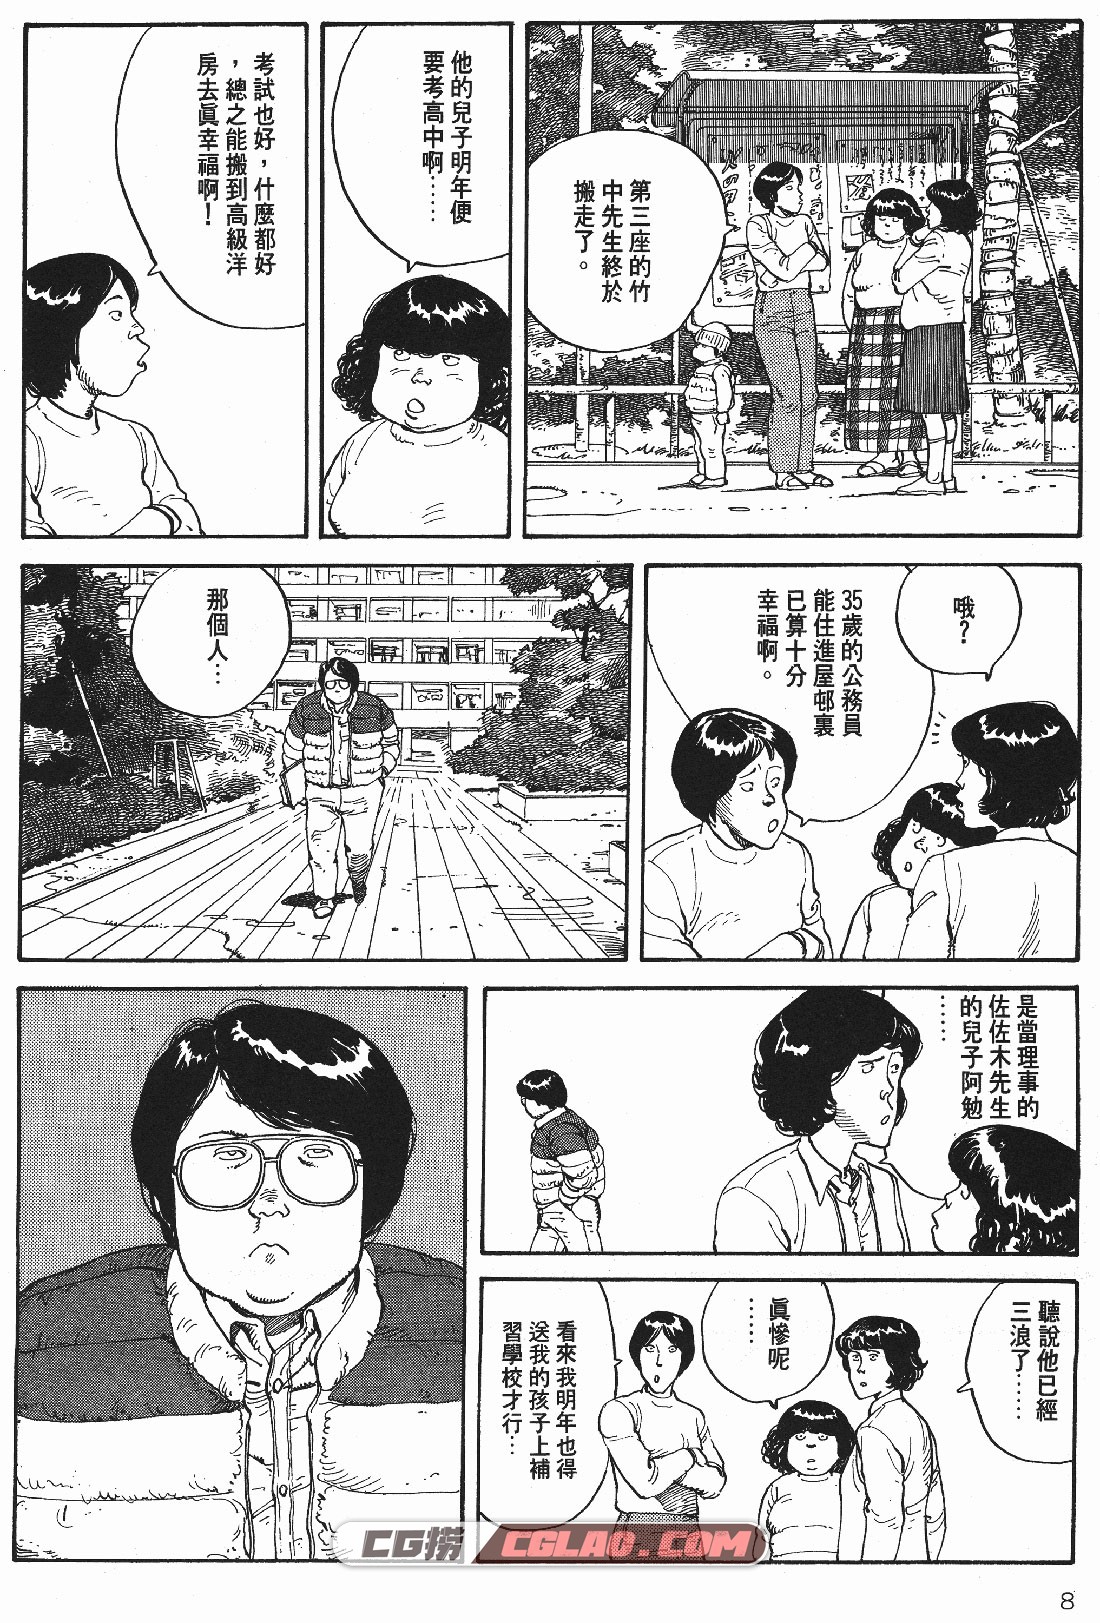 童梦 大友克洋 全一册 日本经典少年漫画百度网盘下载,_TMMT-_0008.jpg